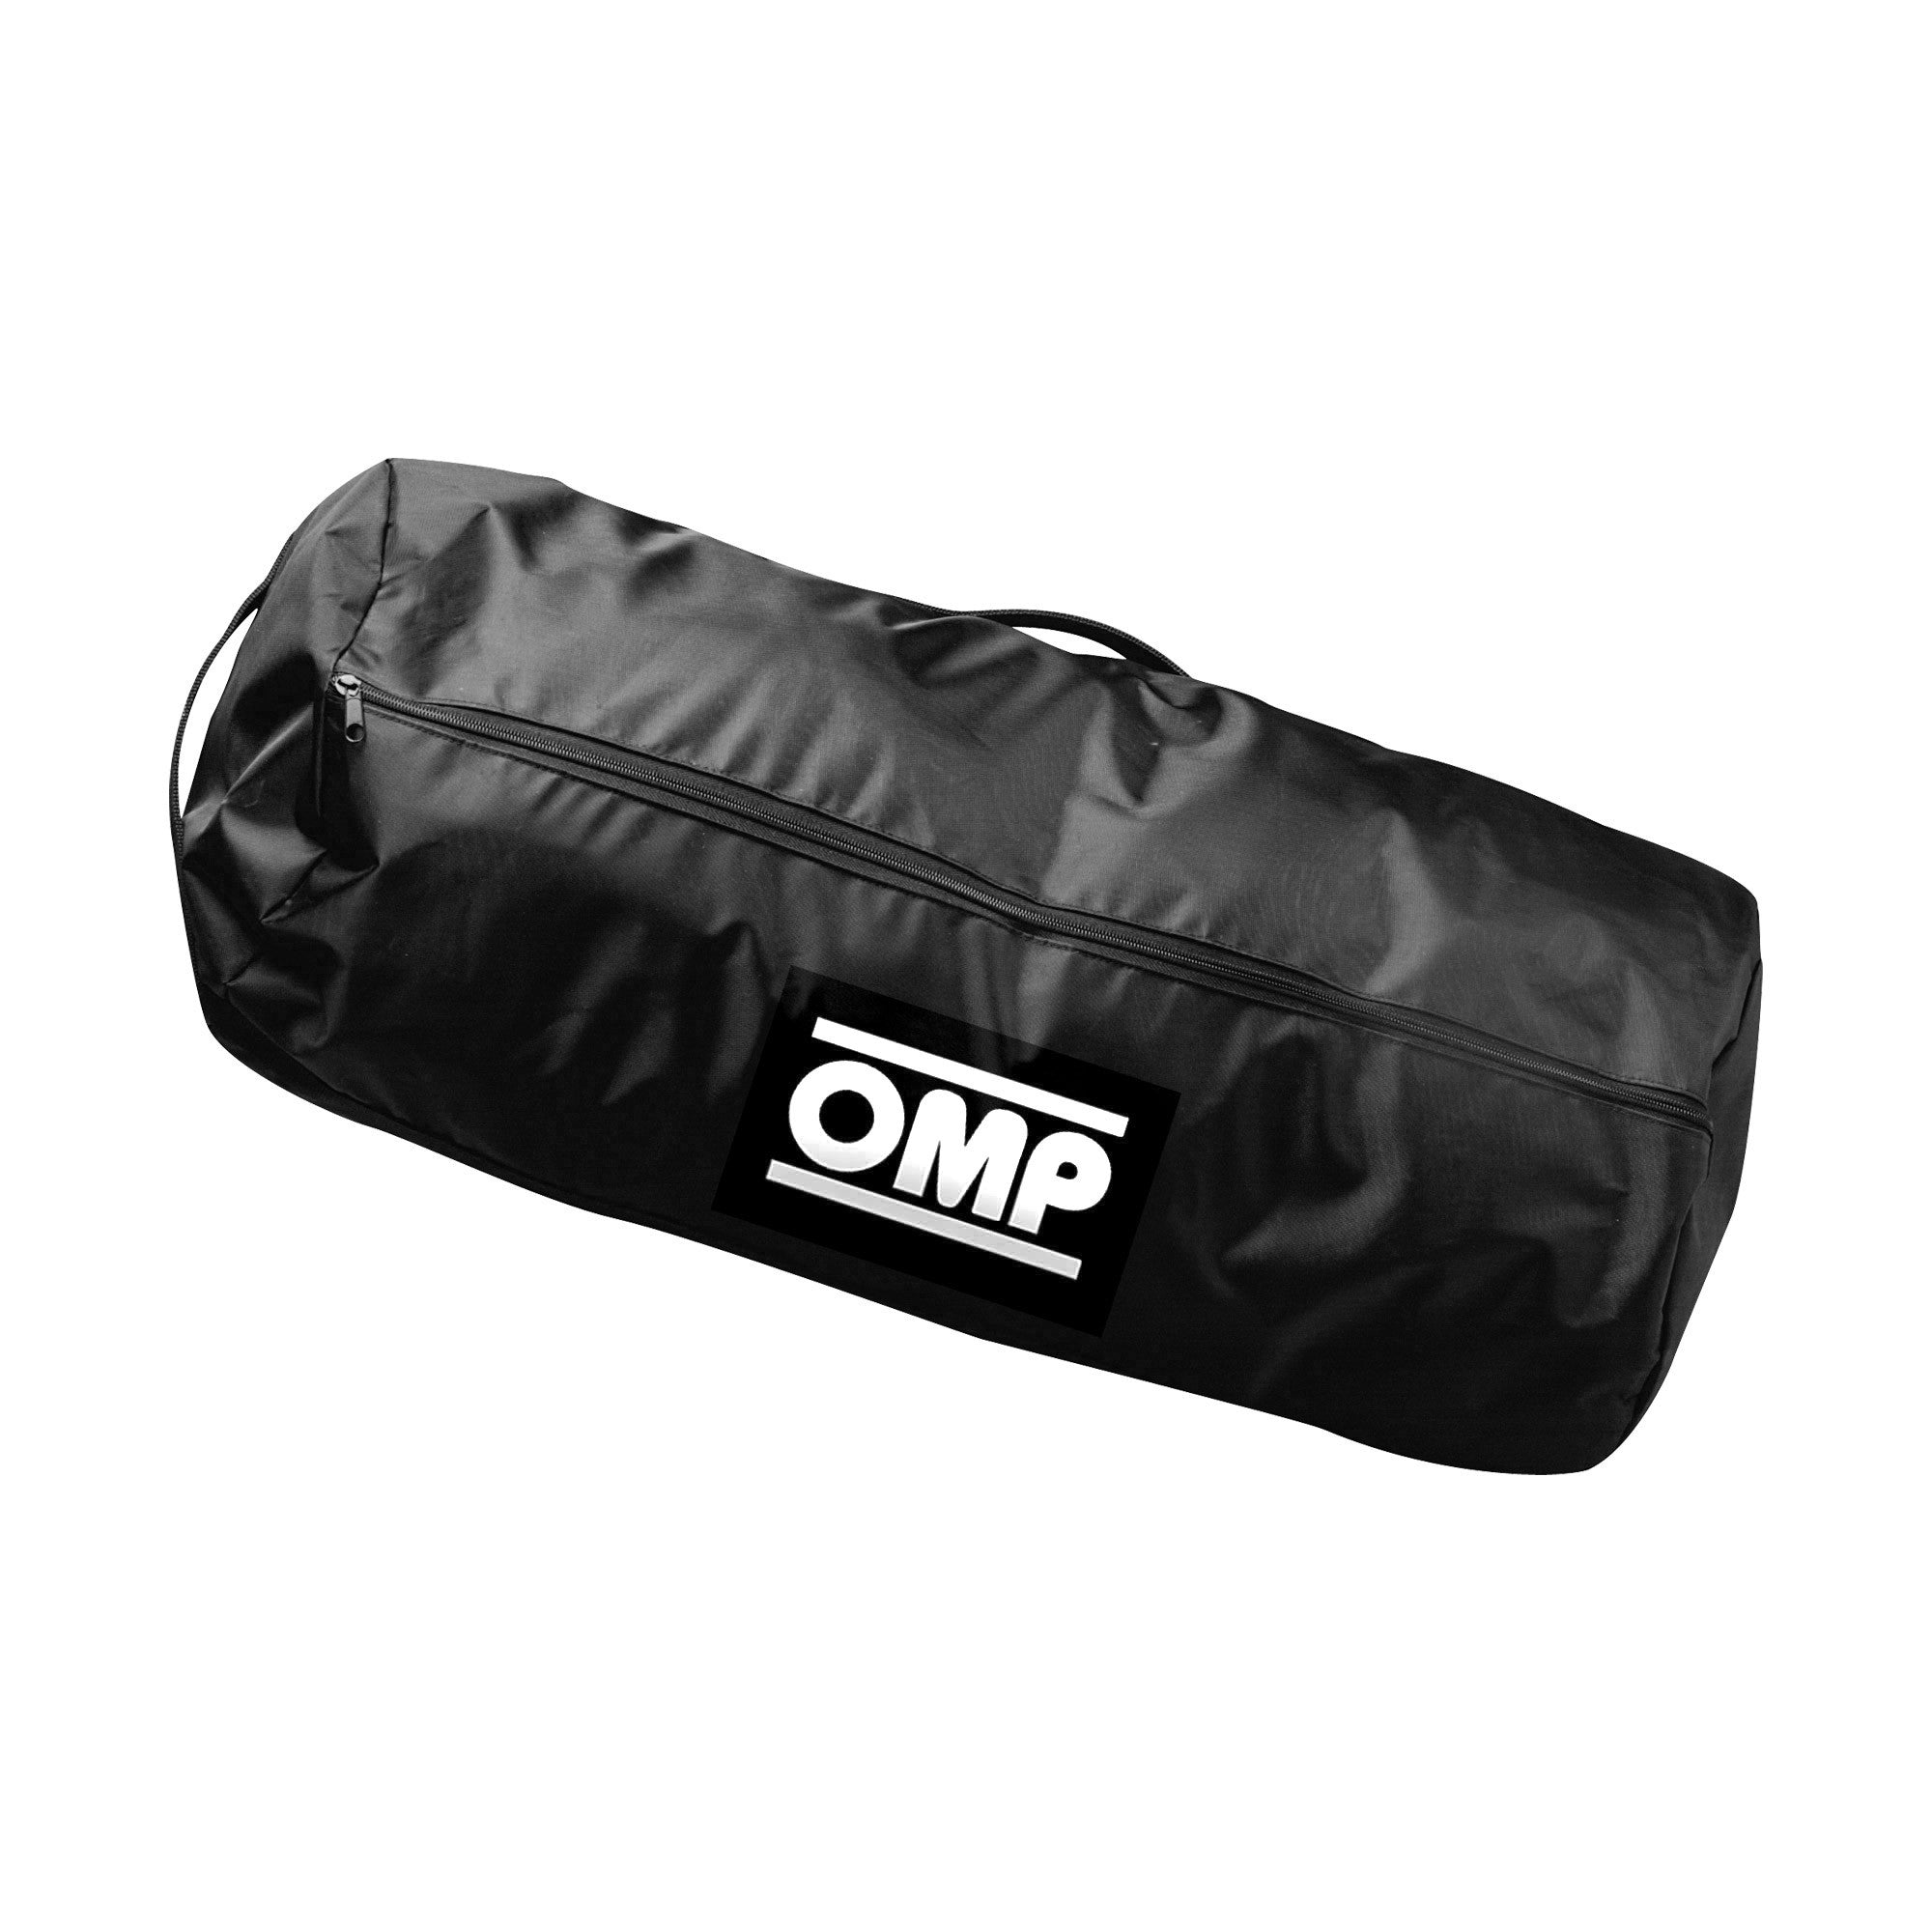 OMP KK0-3300-A01-071 (KK03300071) Bag for tires, black Photo-0 